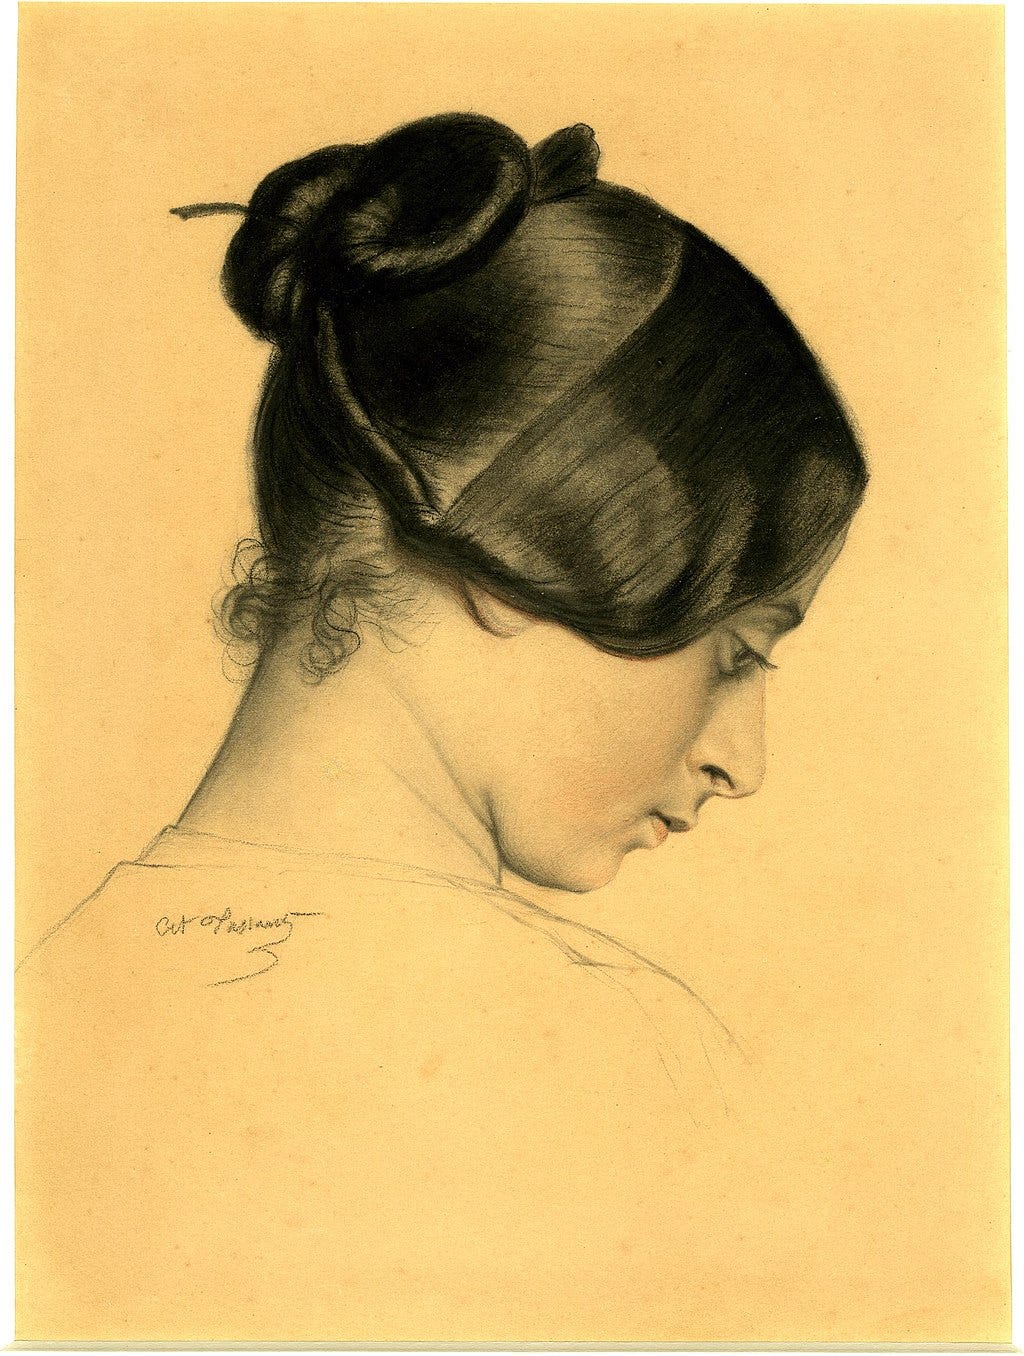 Femme de profil (entre 1854 et 1858), Londres, British Museum.